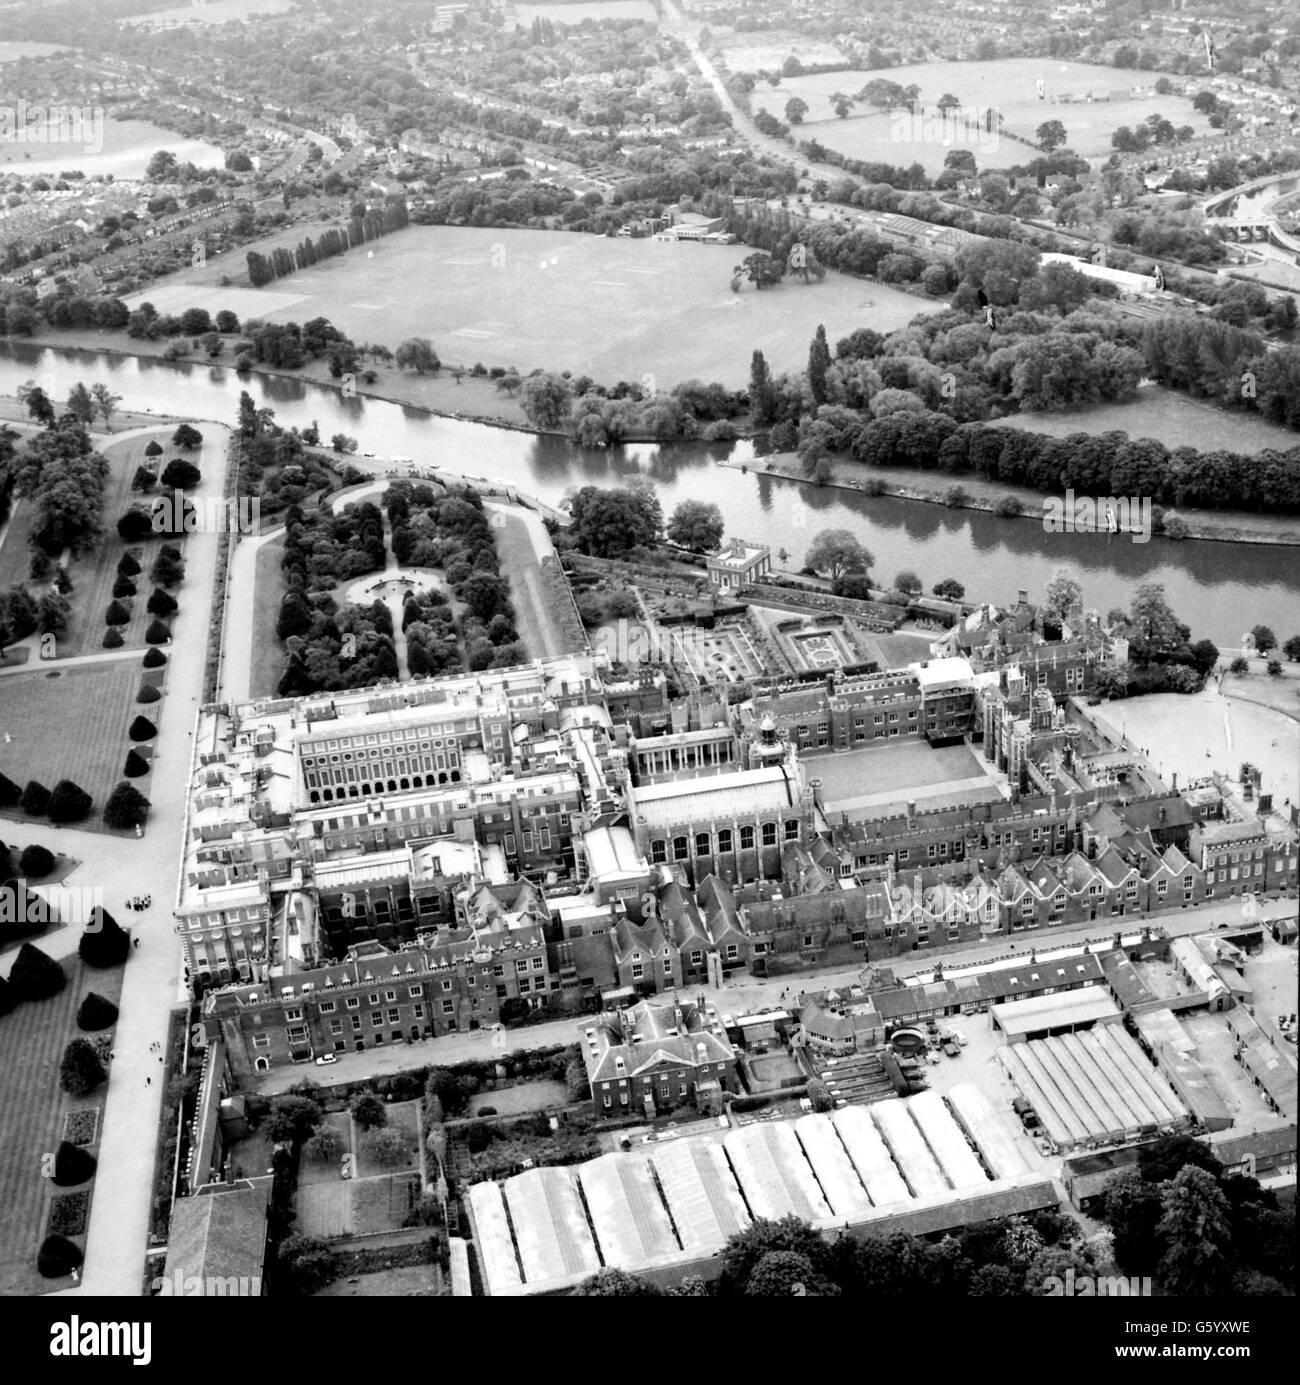 Una foto aerea di Hamptoon Court Palace. Una foto aerea di una delle attrazioni turistiche più conosciute di Londra, l'Hampton Court Palace. Foto Stock